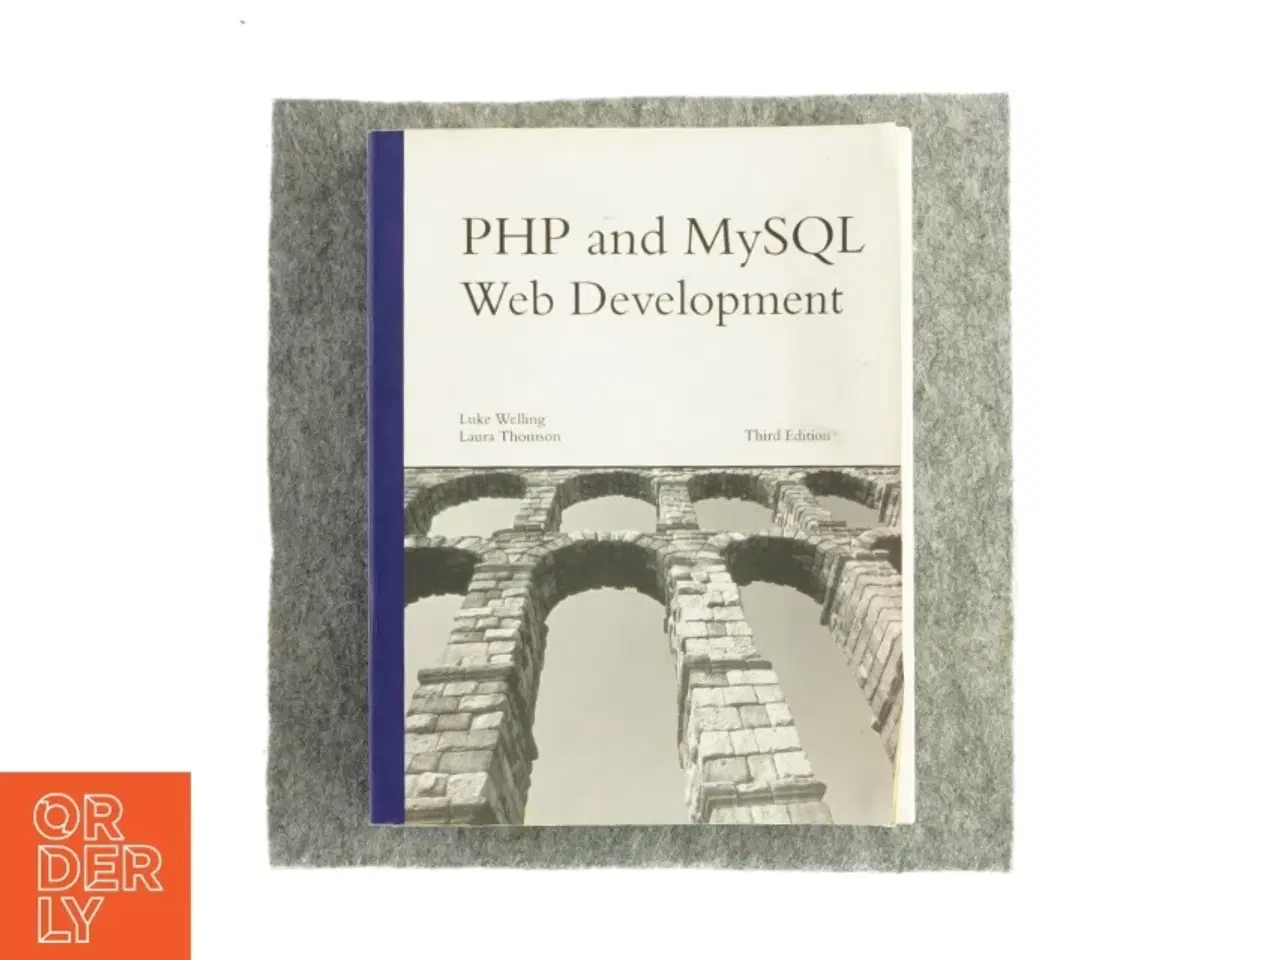 Billede 1 - PHP and MySQL web development af Luke Welling og Laura Thomson (Bog)